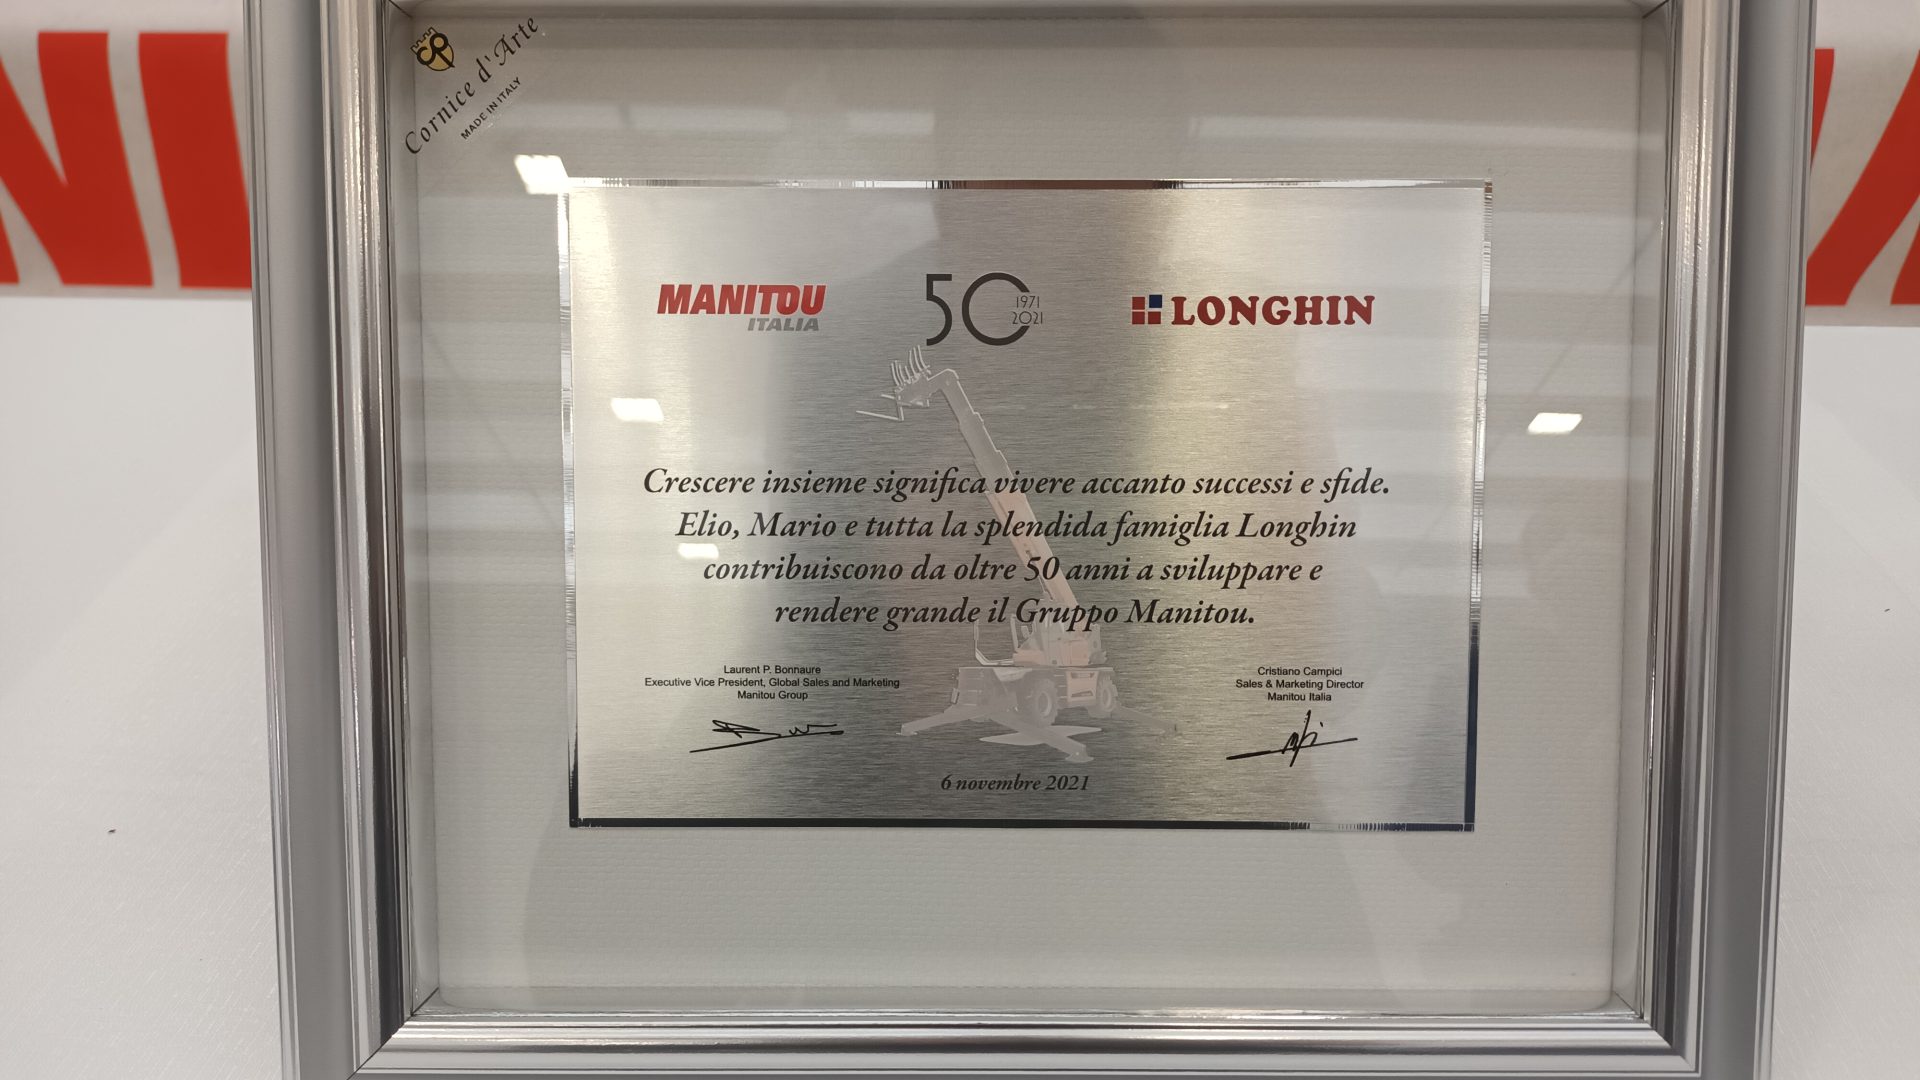 Il rapporto fra Manitou e Longhin è arrivato al mezzo secolo